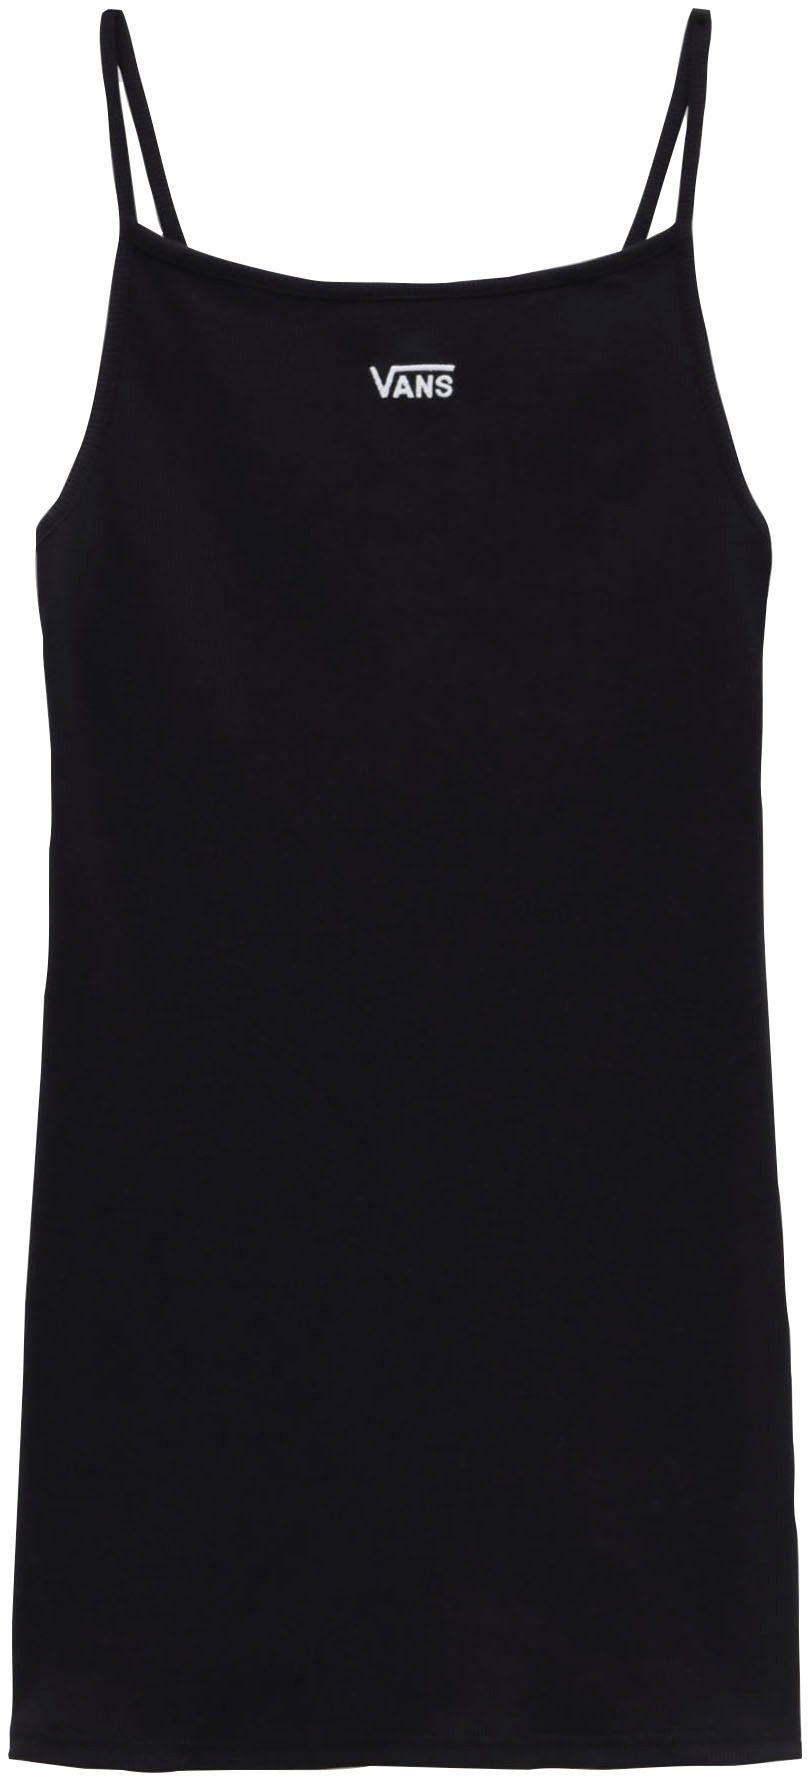 JESSIE Vans DRESS black/white Sommerkleid